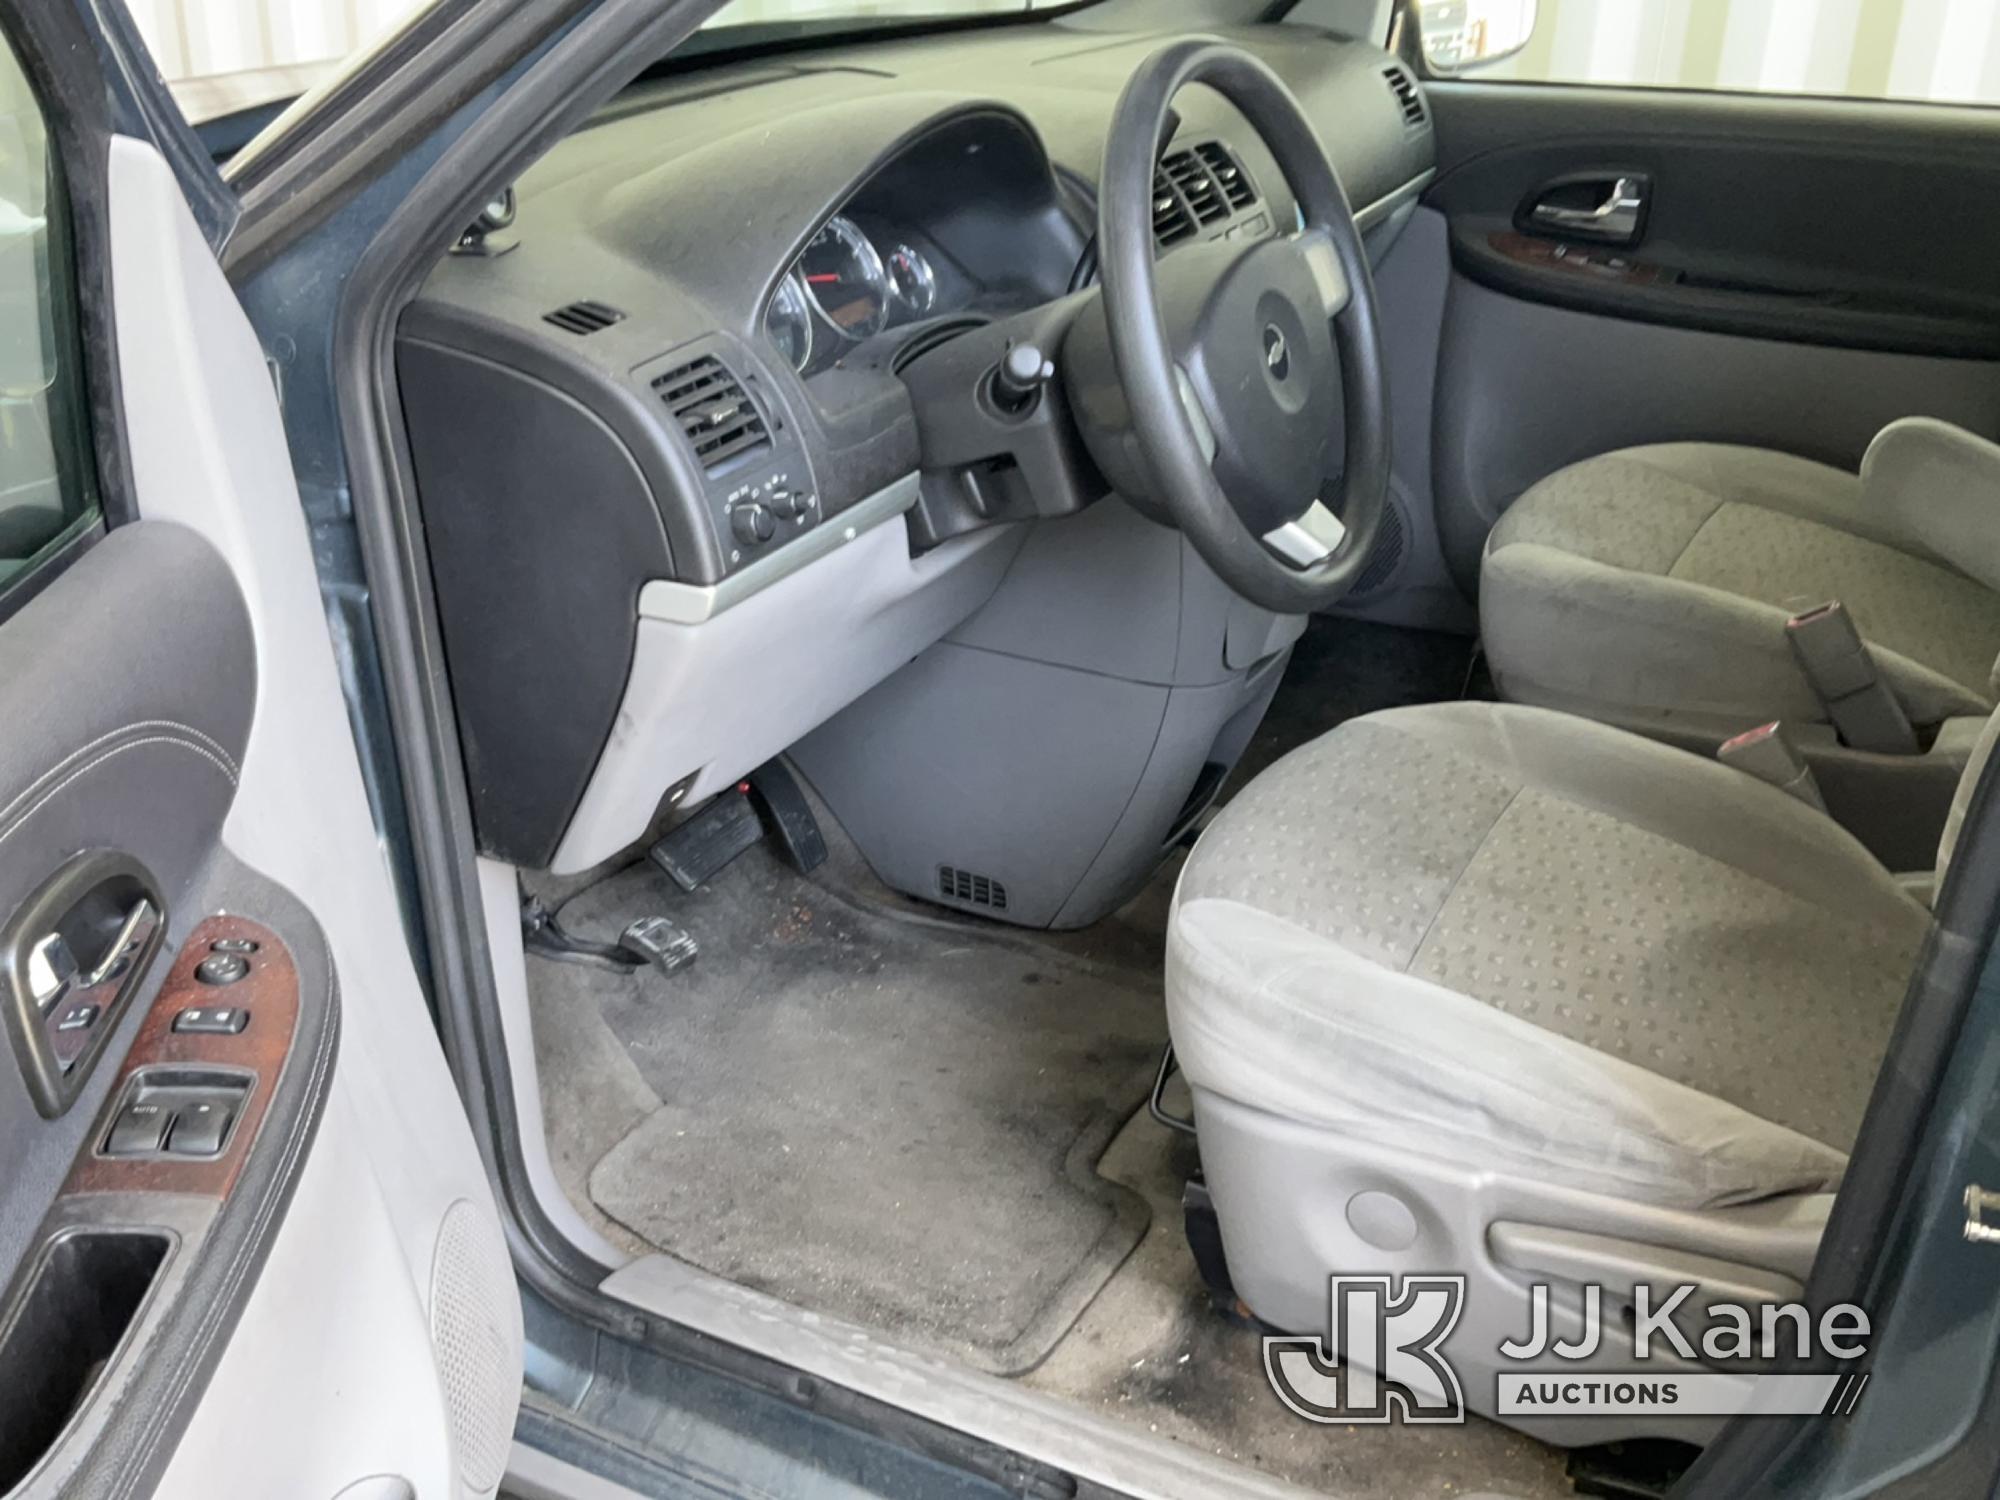 (Jurupa Valley, CA) 2007 Chevrolet Uplander LS Mini Passenger Van Runs & Moves, Missing Rear Seats,